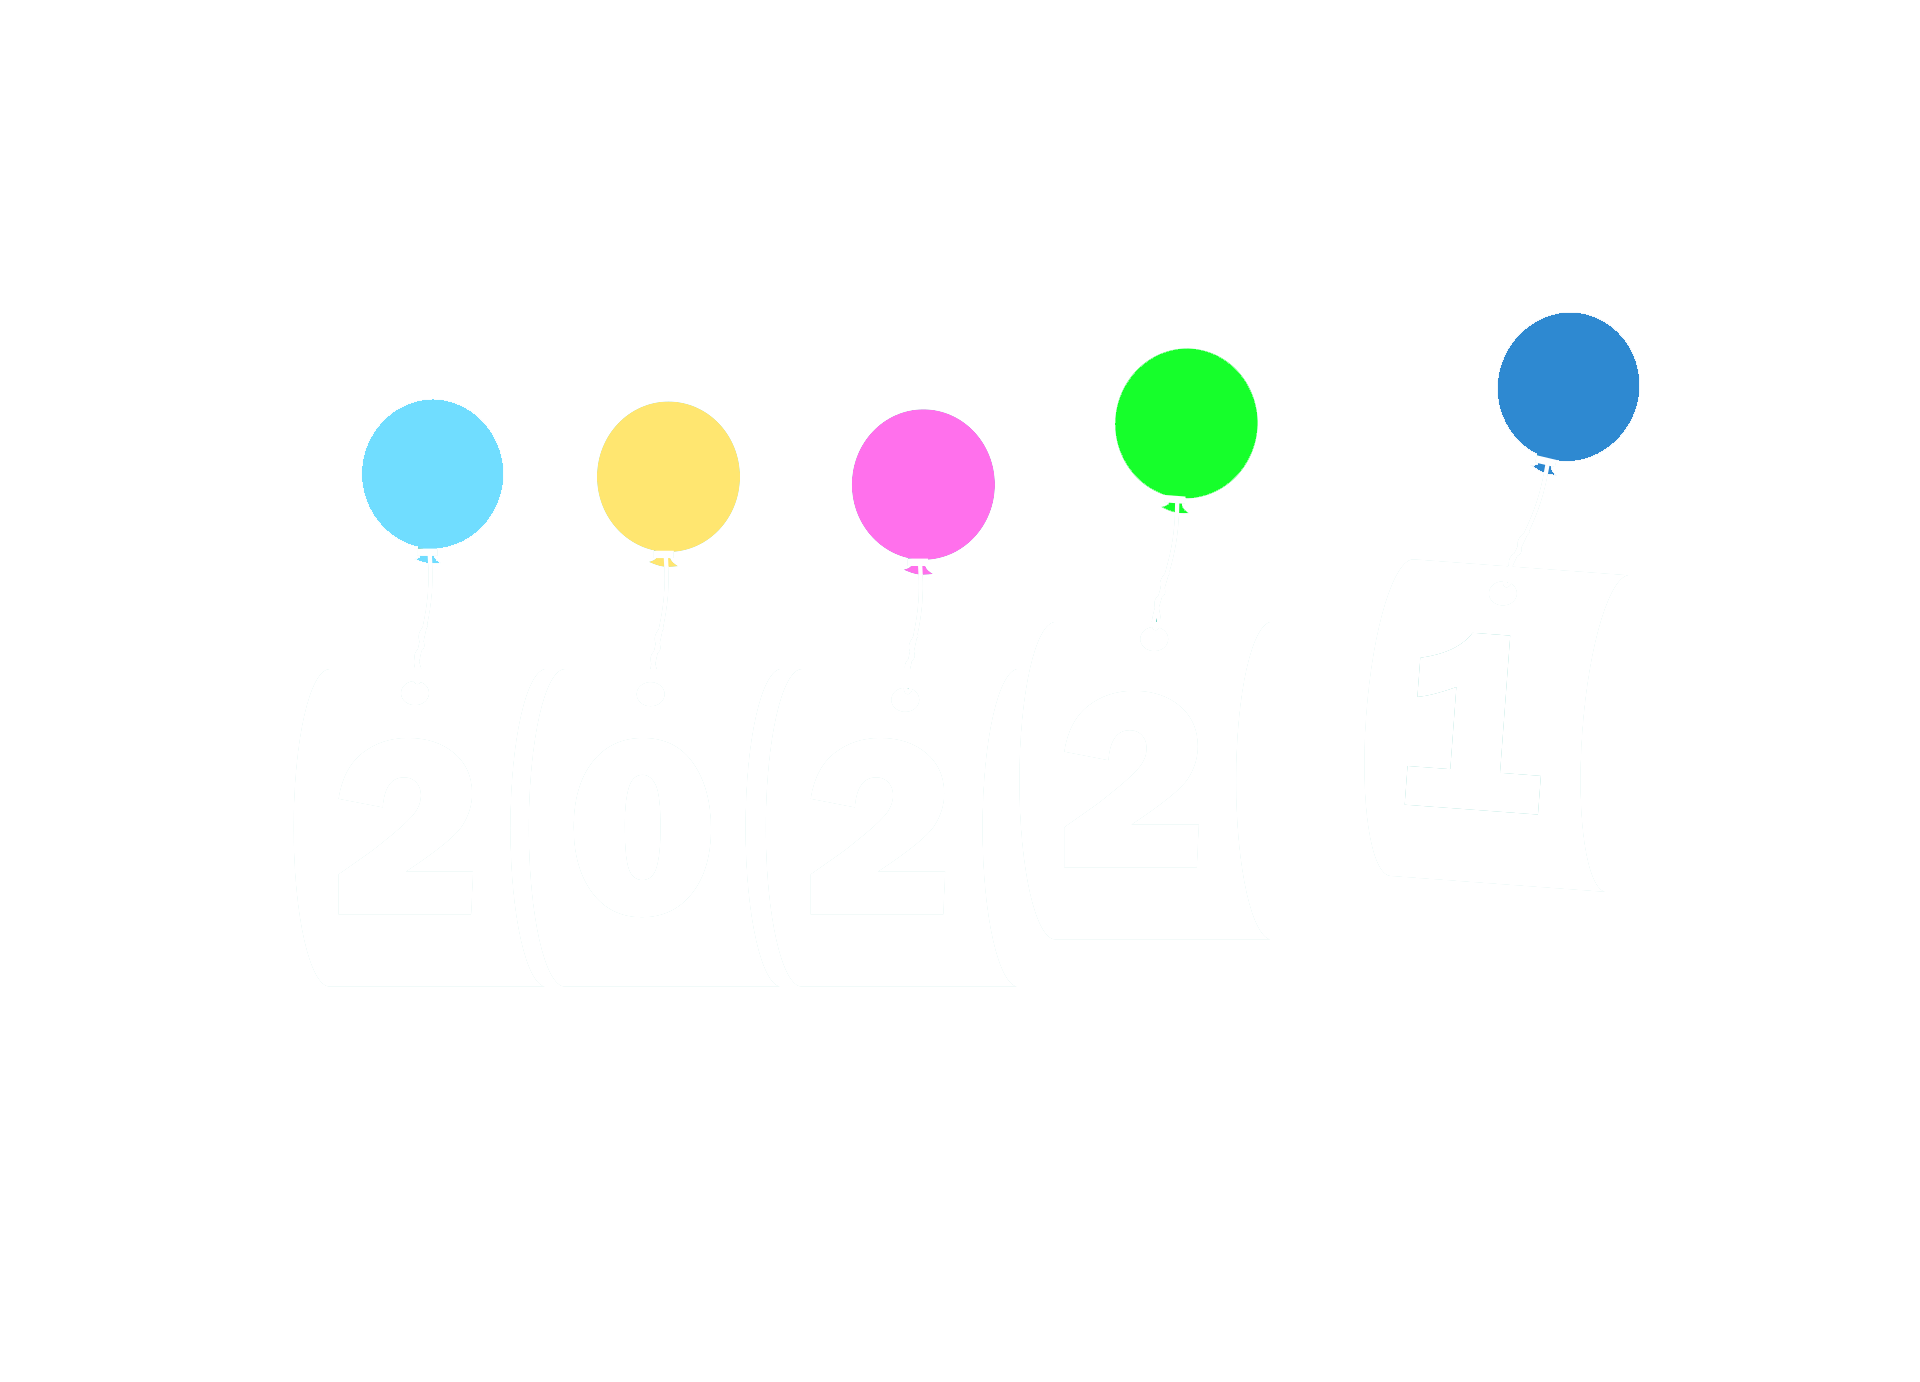 Nowy Rok 2022